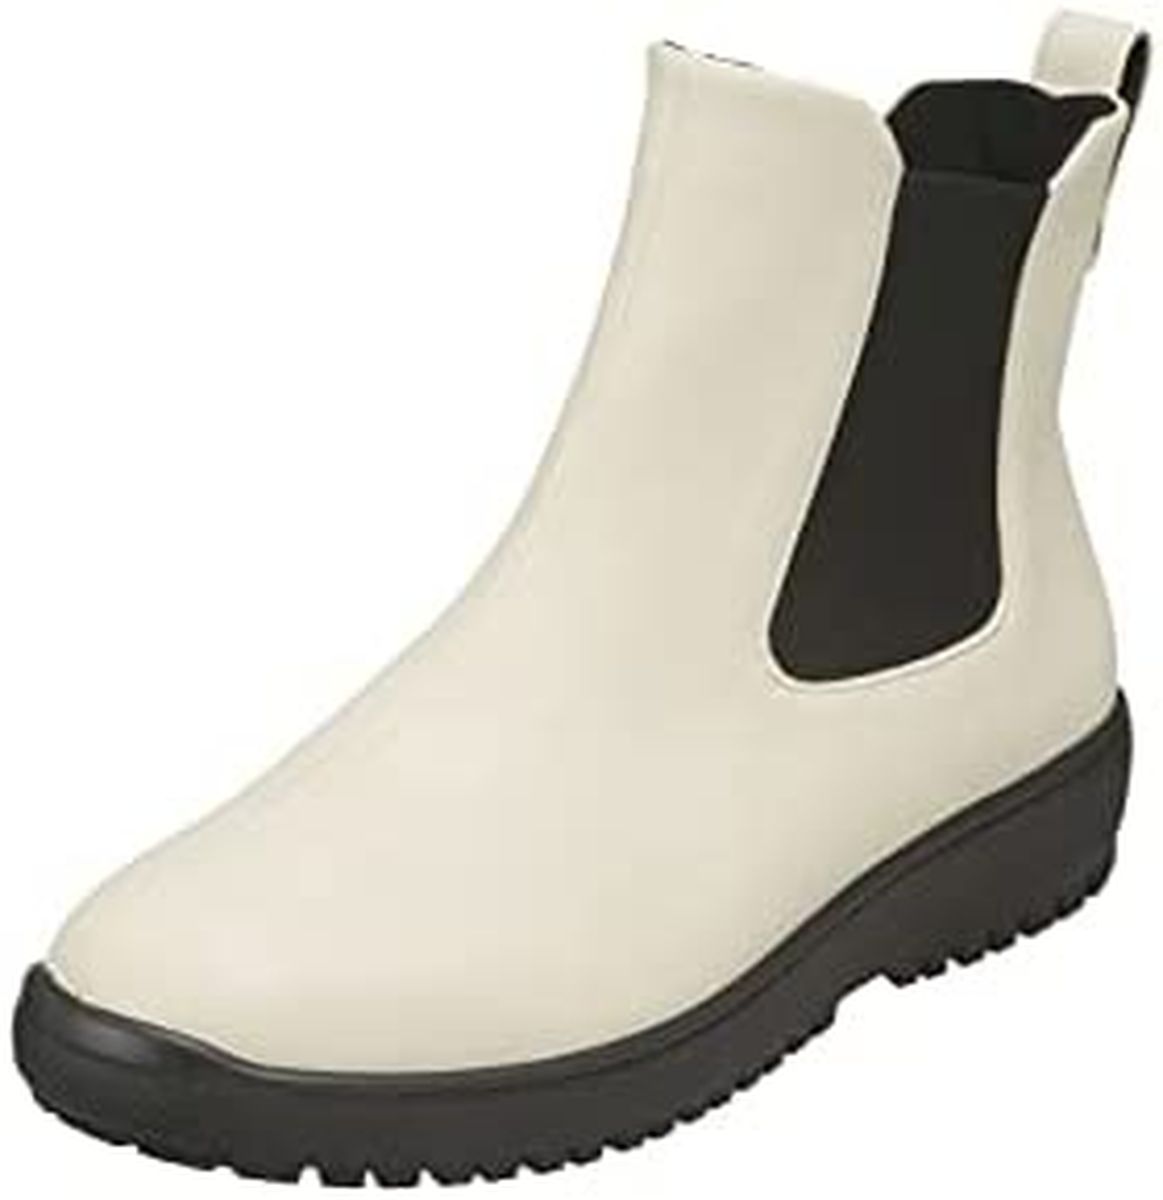 ブーツ パンジー 4810 レディース シューズ 生活防水ブーツ 長靴 PUソール 軽量 履きやすい...